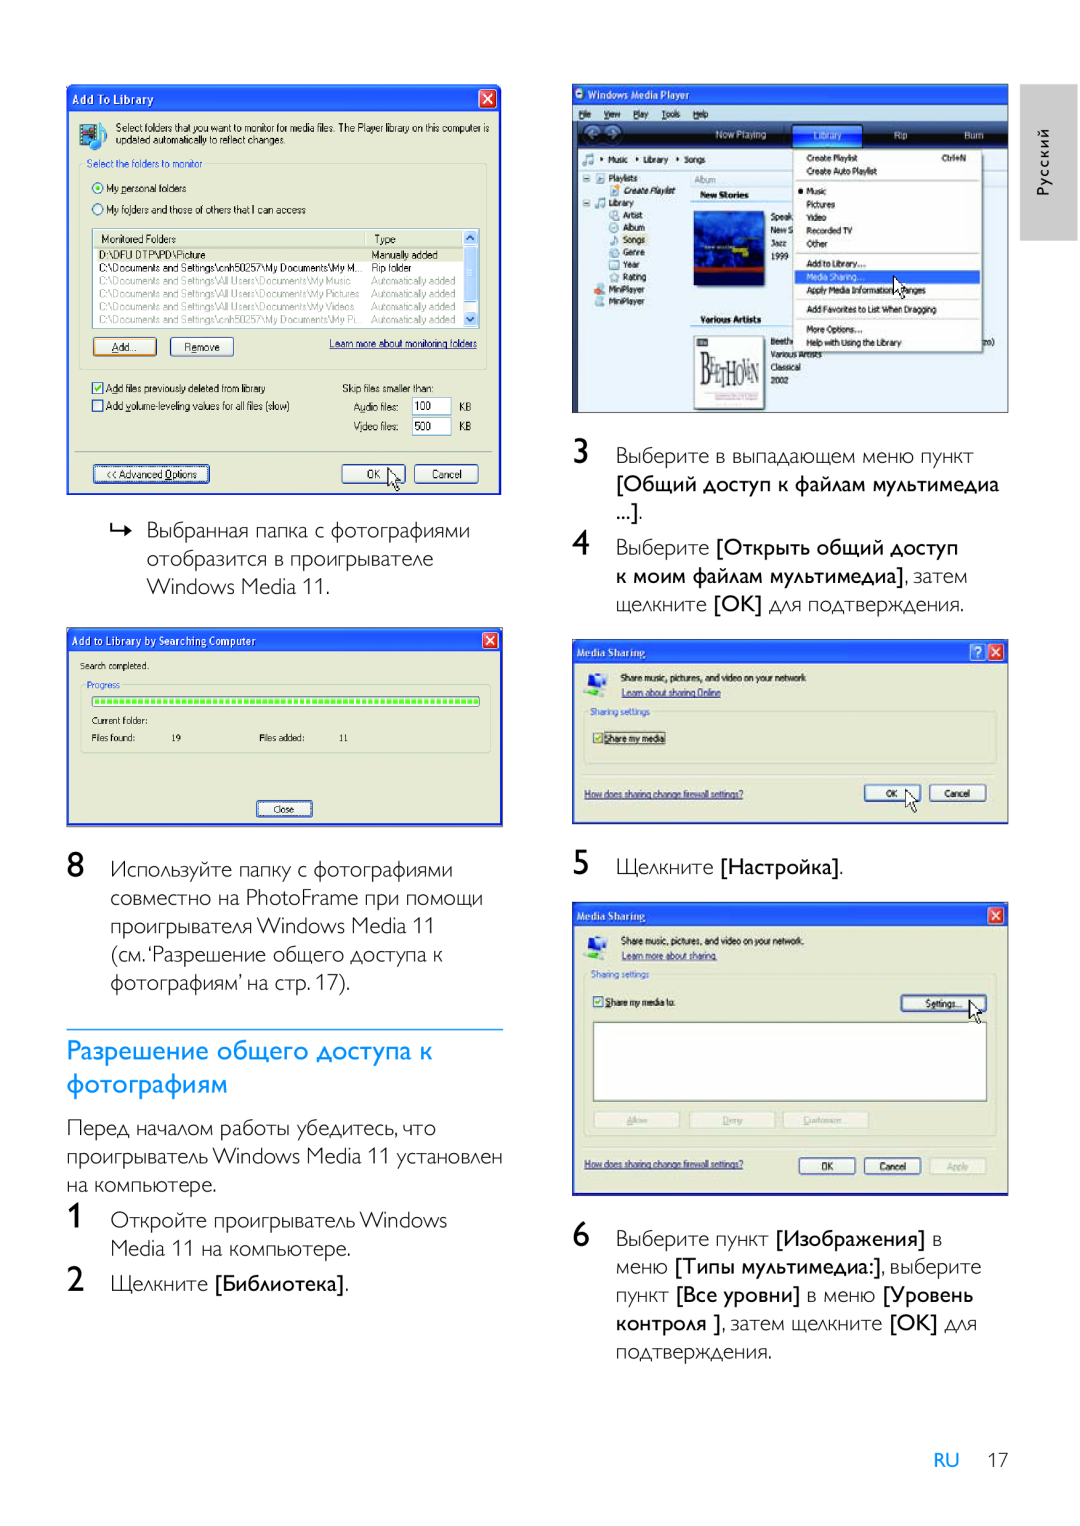 Philips 8FF3WMI manual ǝǭǴǽǲȅǲǺǵǲ ǻǮȆǲǰǻ ǱǻǾǿȀǼǭ Ƿ ȁǻǿǻǰǽǭȁǵȌǹ, Windows Media, 2ǦǲǸǷǺǵǿǲ ǎǵǮǸǵǻǿǲǷǭ 